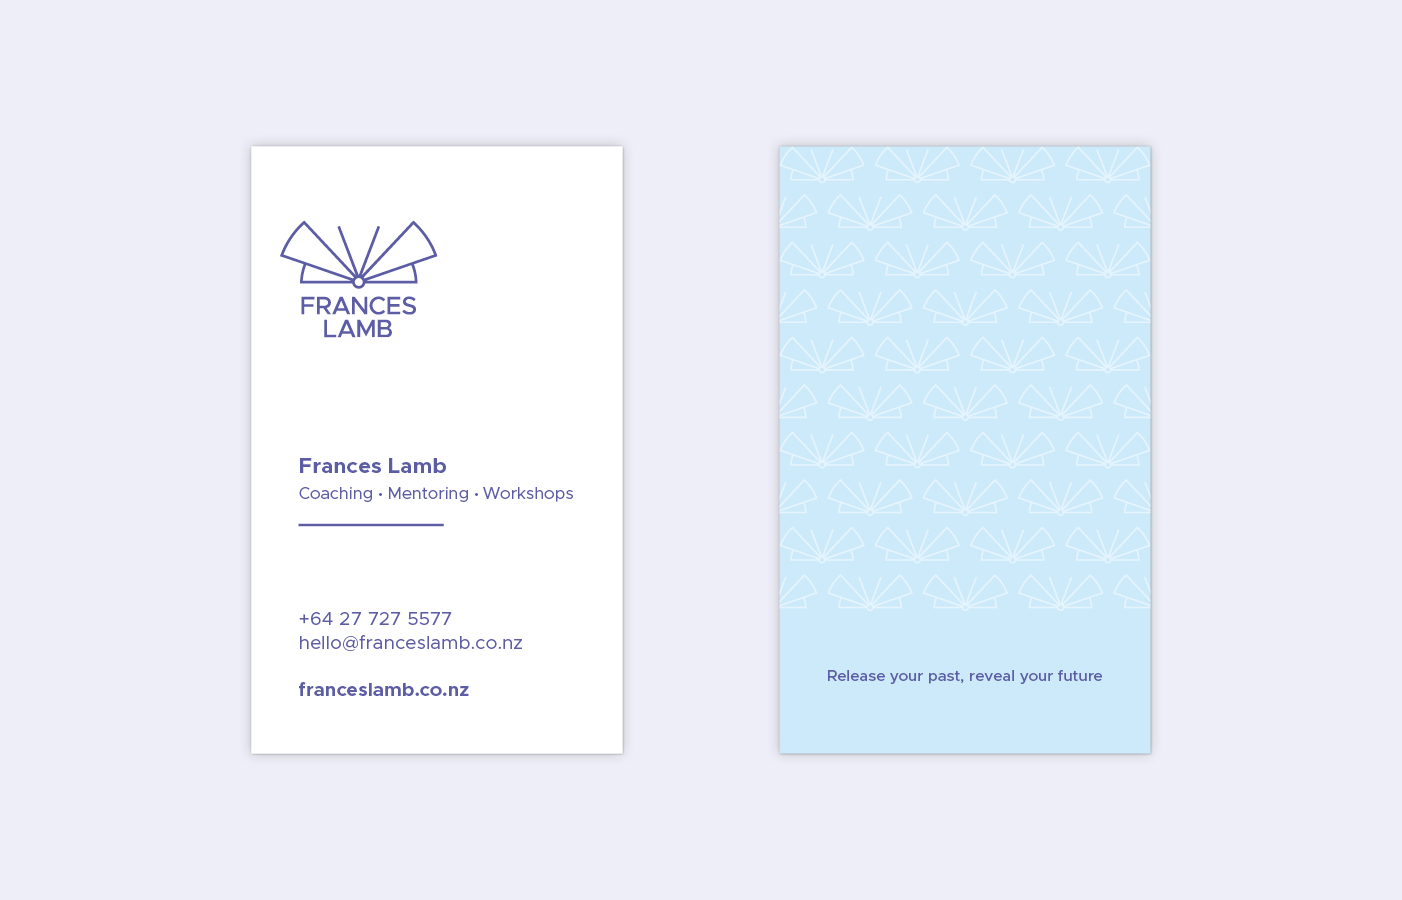 Frances Lamb business cards